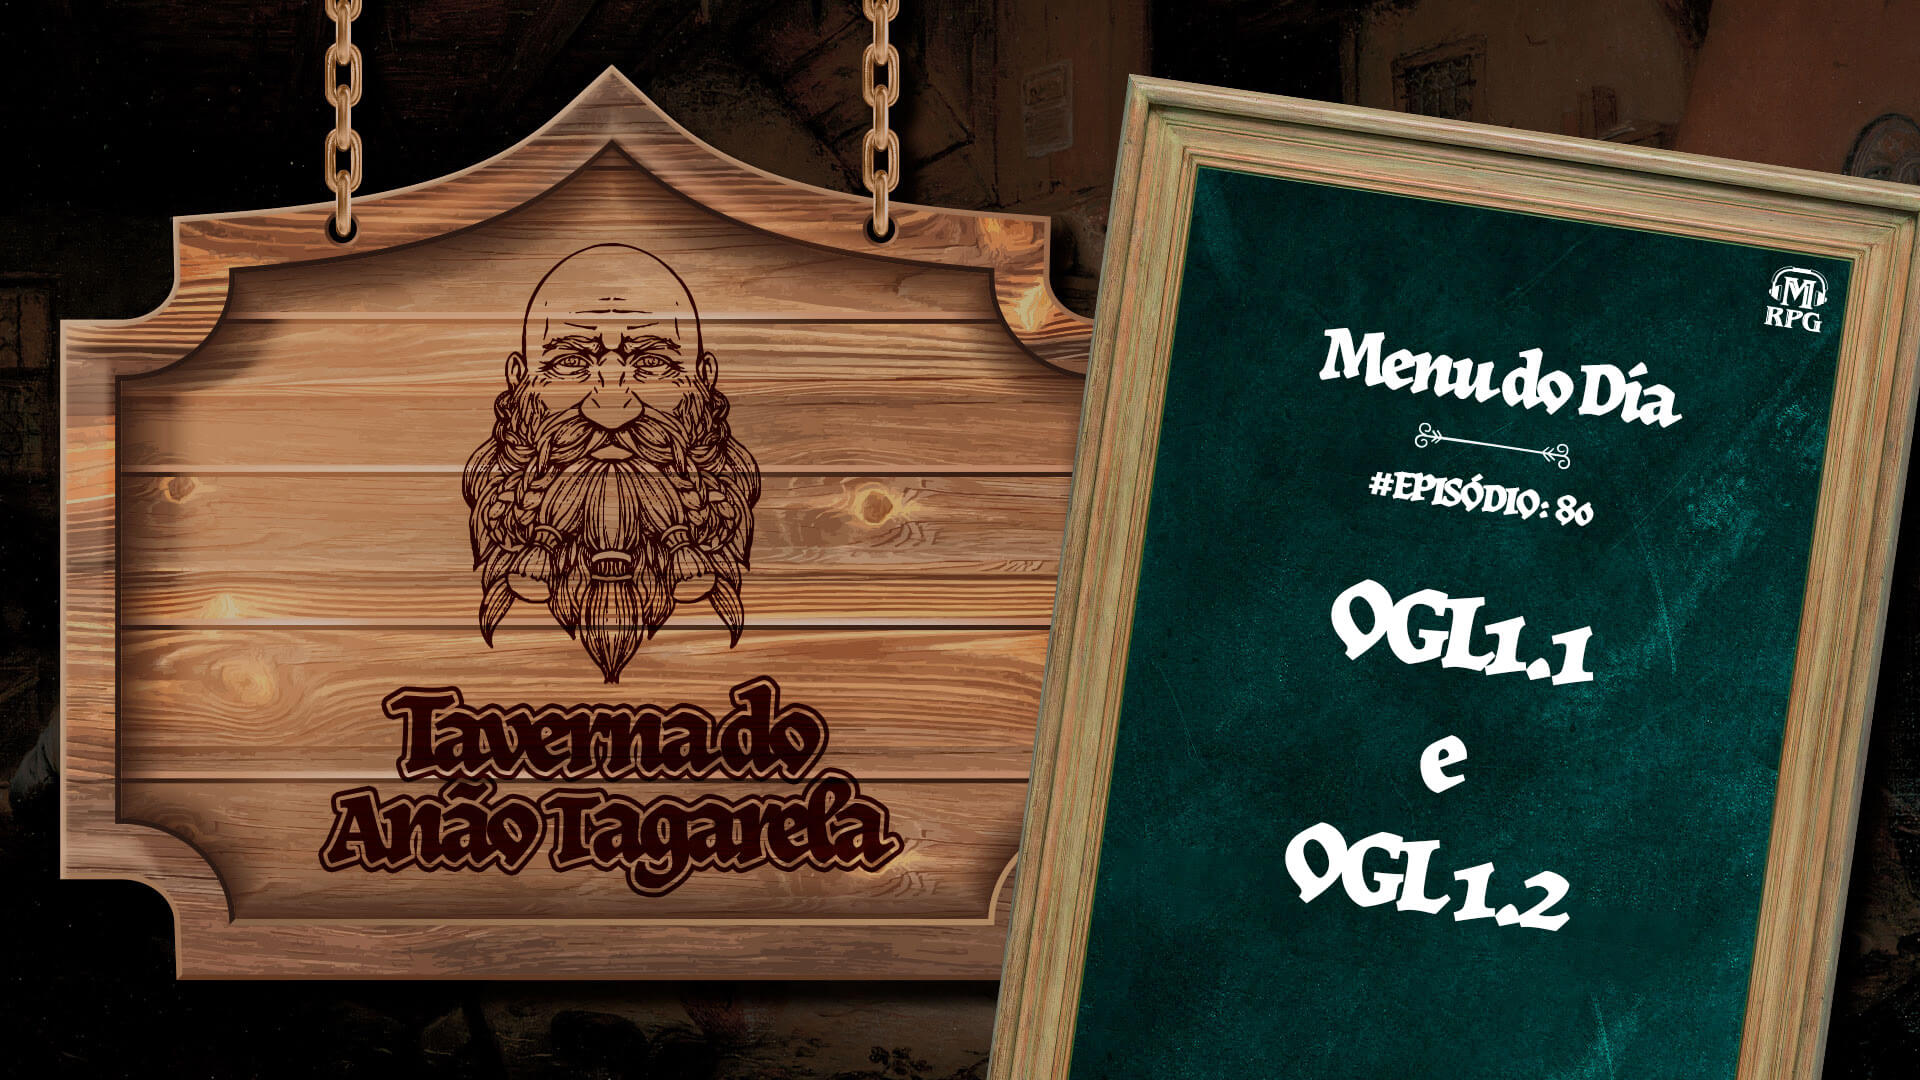 OGL1.1 e OGL 1.2 – Taverna do Anão Tagarela #80